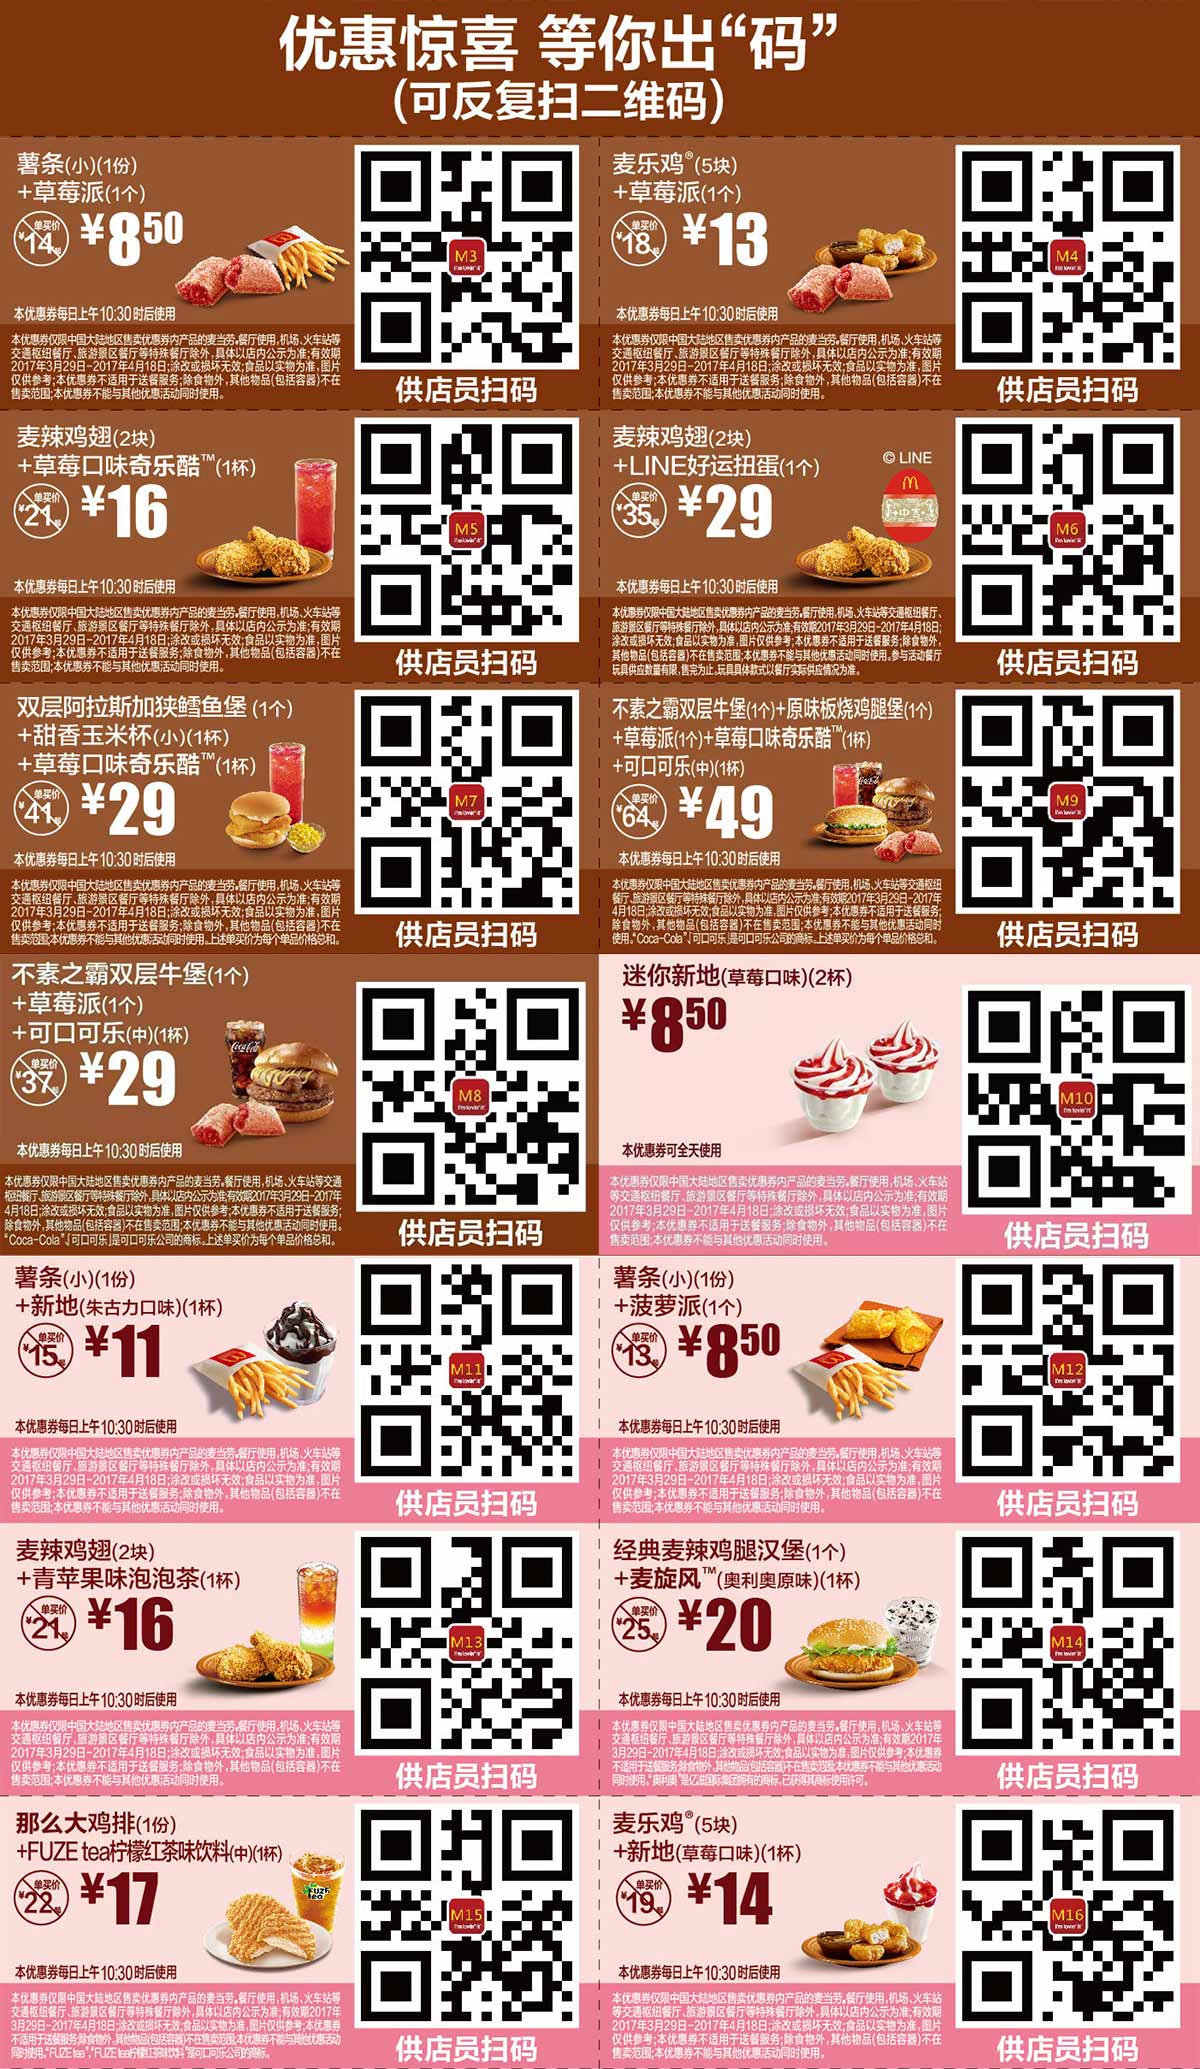 麦当劳优惠券:麦当劳优惠券2017年4月份手机版整张版本，出示给店员扫码有优惠 有效期2017年3月29日-2017年4月18日 使用范围:麦当劳中国大陆地区餐厅